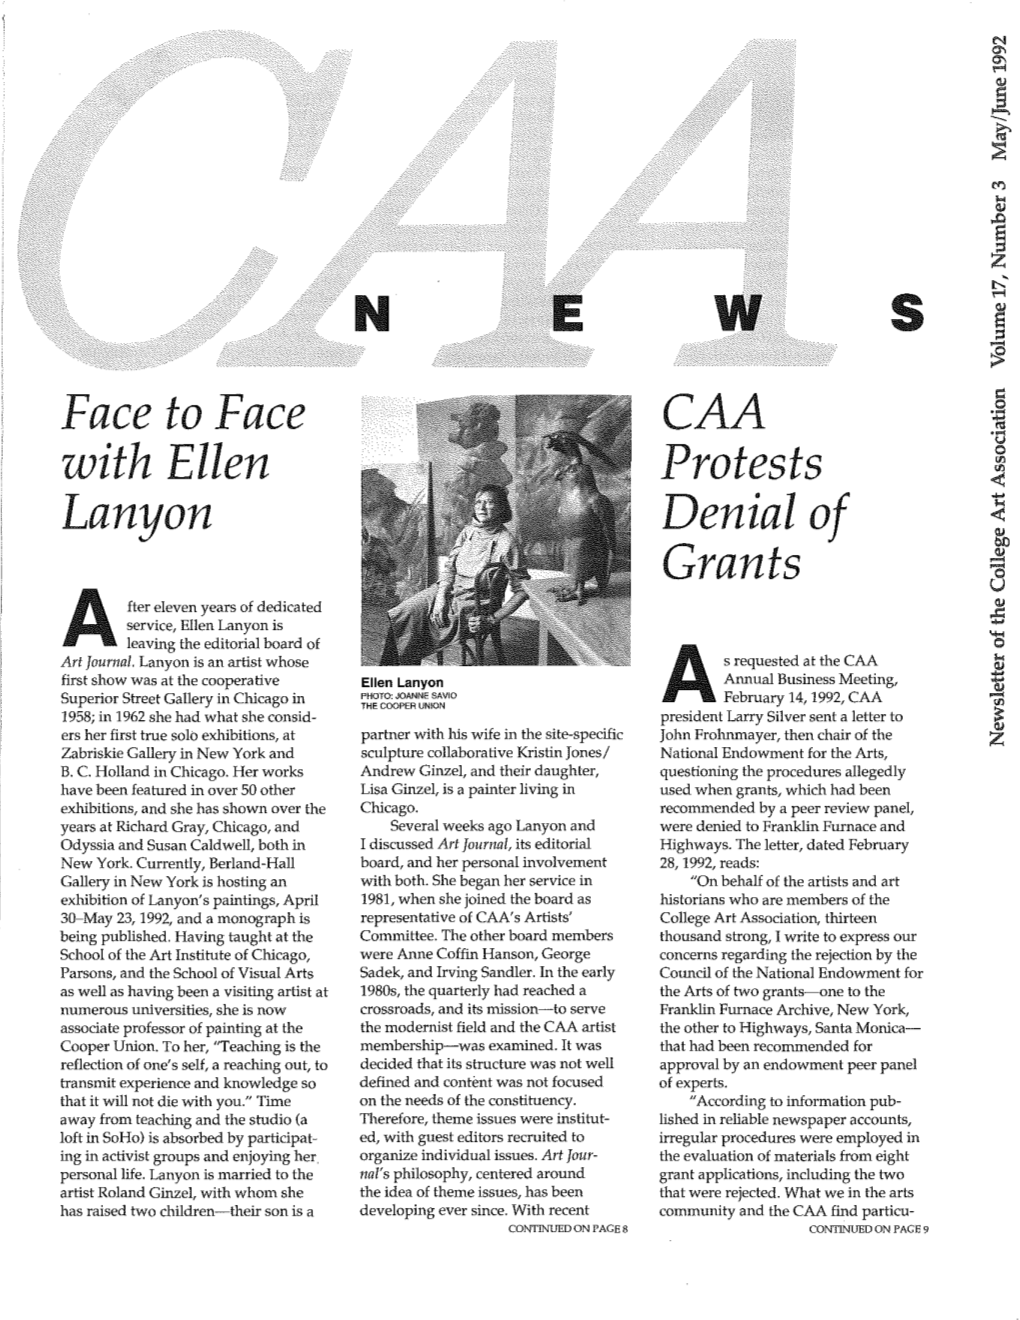 May-June 1992 CAA News